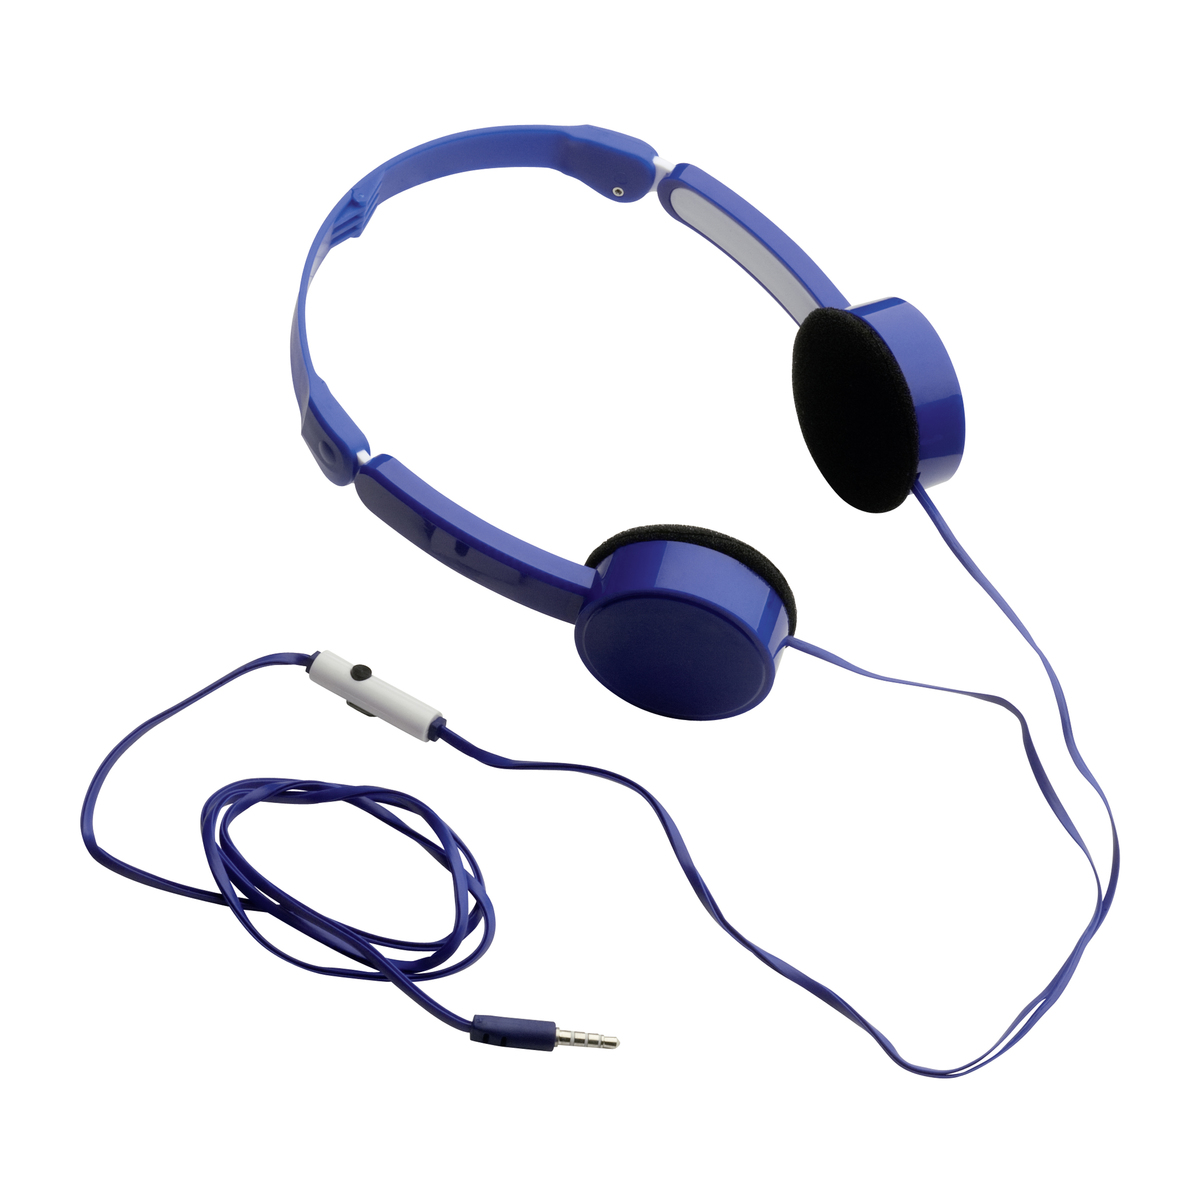 LM Kopfhörer mit Freisprecheinrichtung REFLECTS-TORBAY BLUE blau